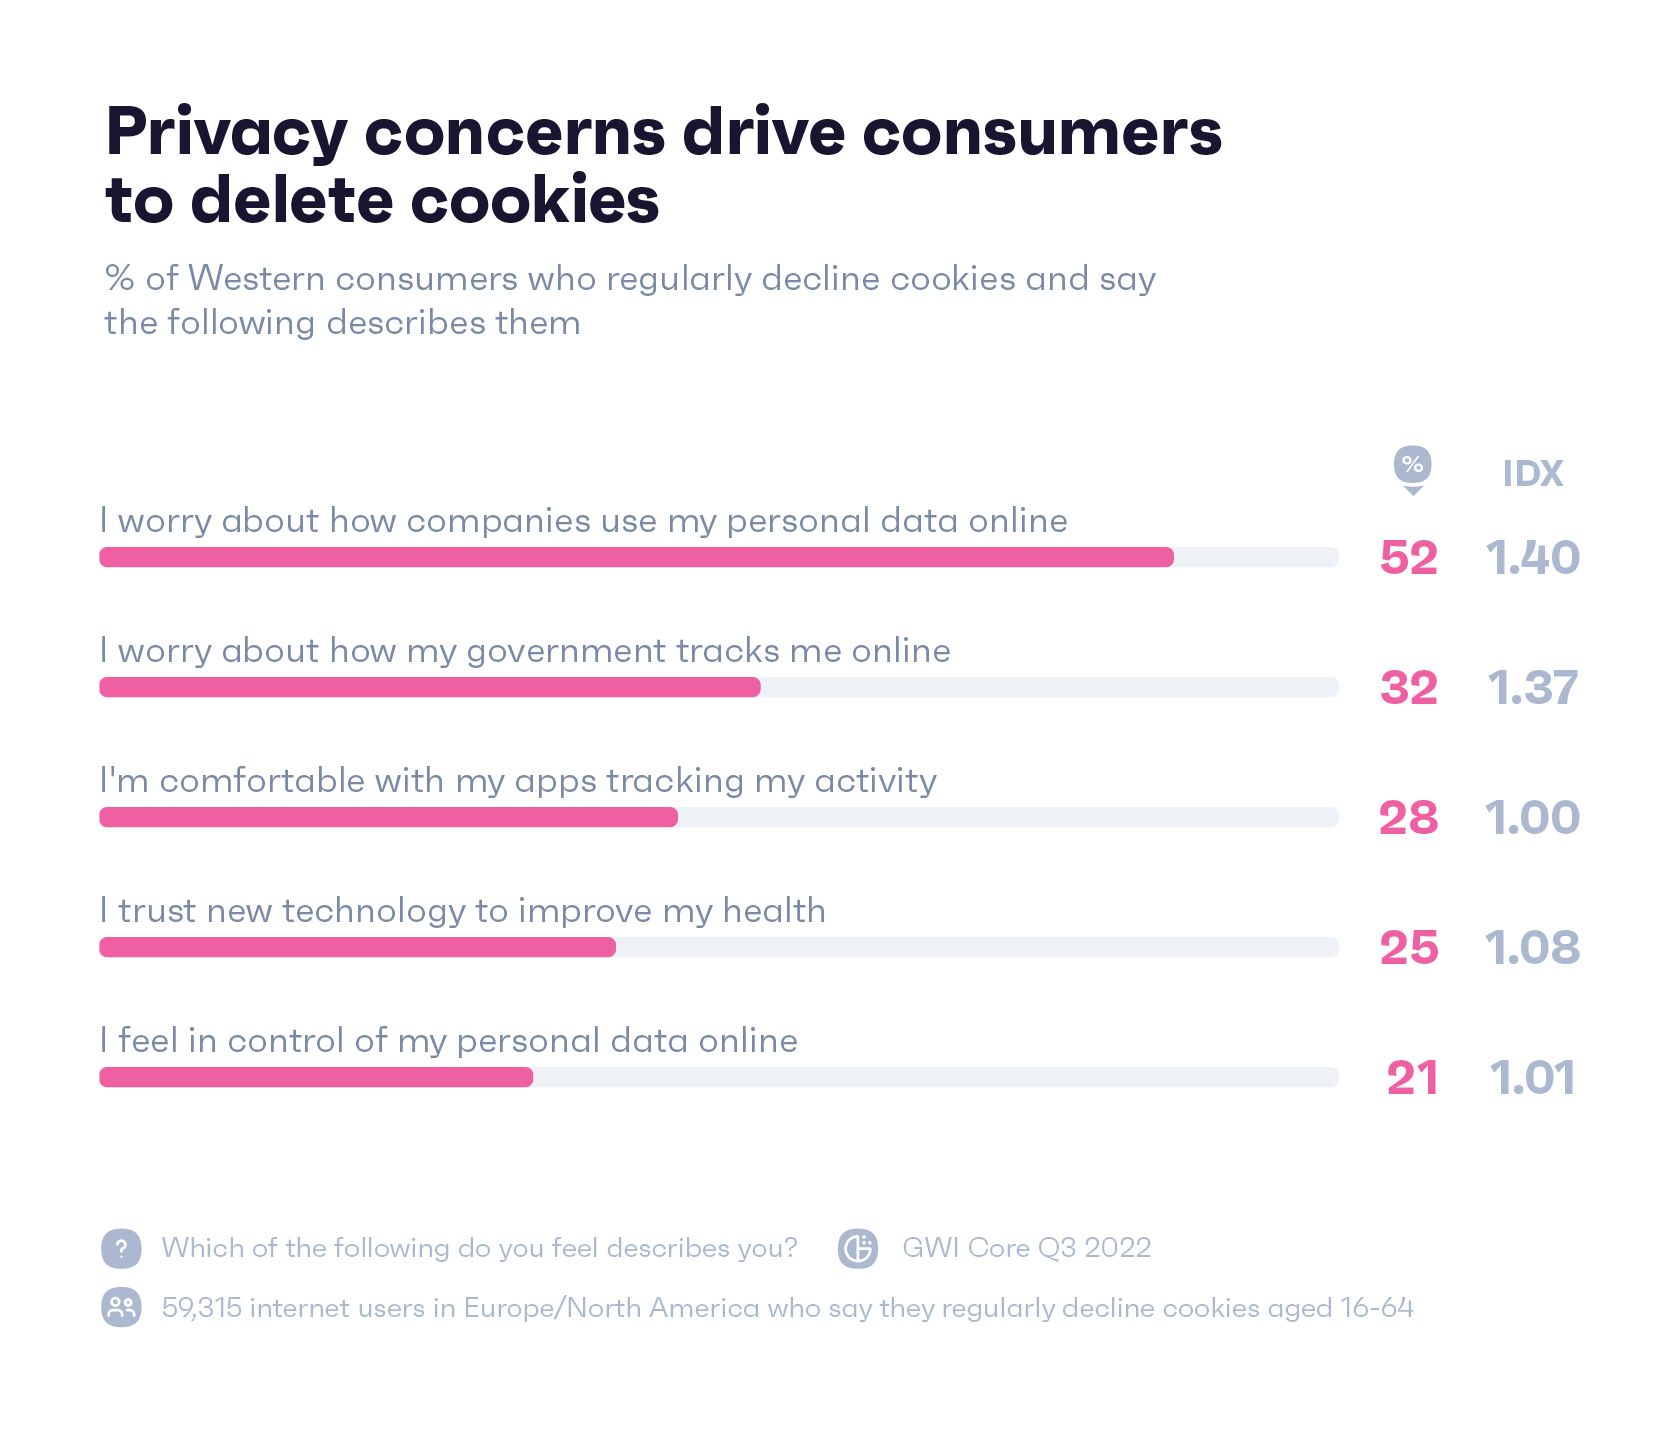 Gráfico que muestra cómo se describirían a sí mismos los consumidores occidentales que rechazan las cookies regularmente